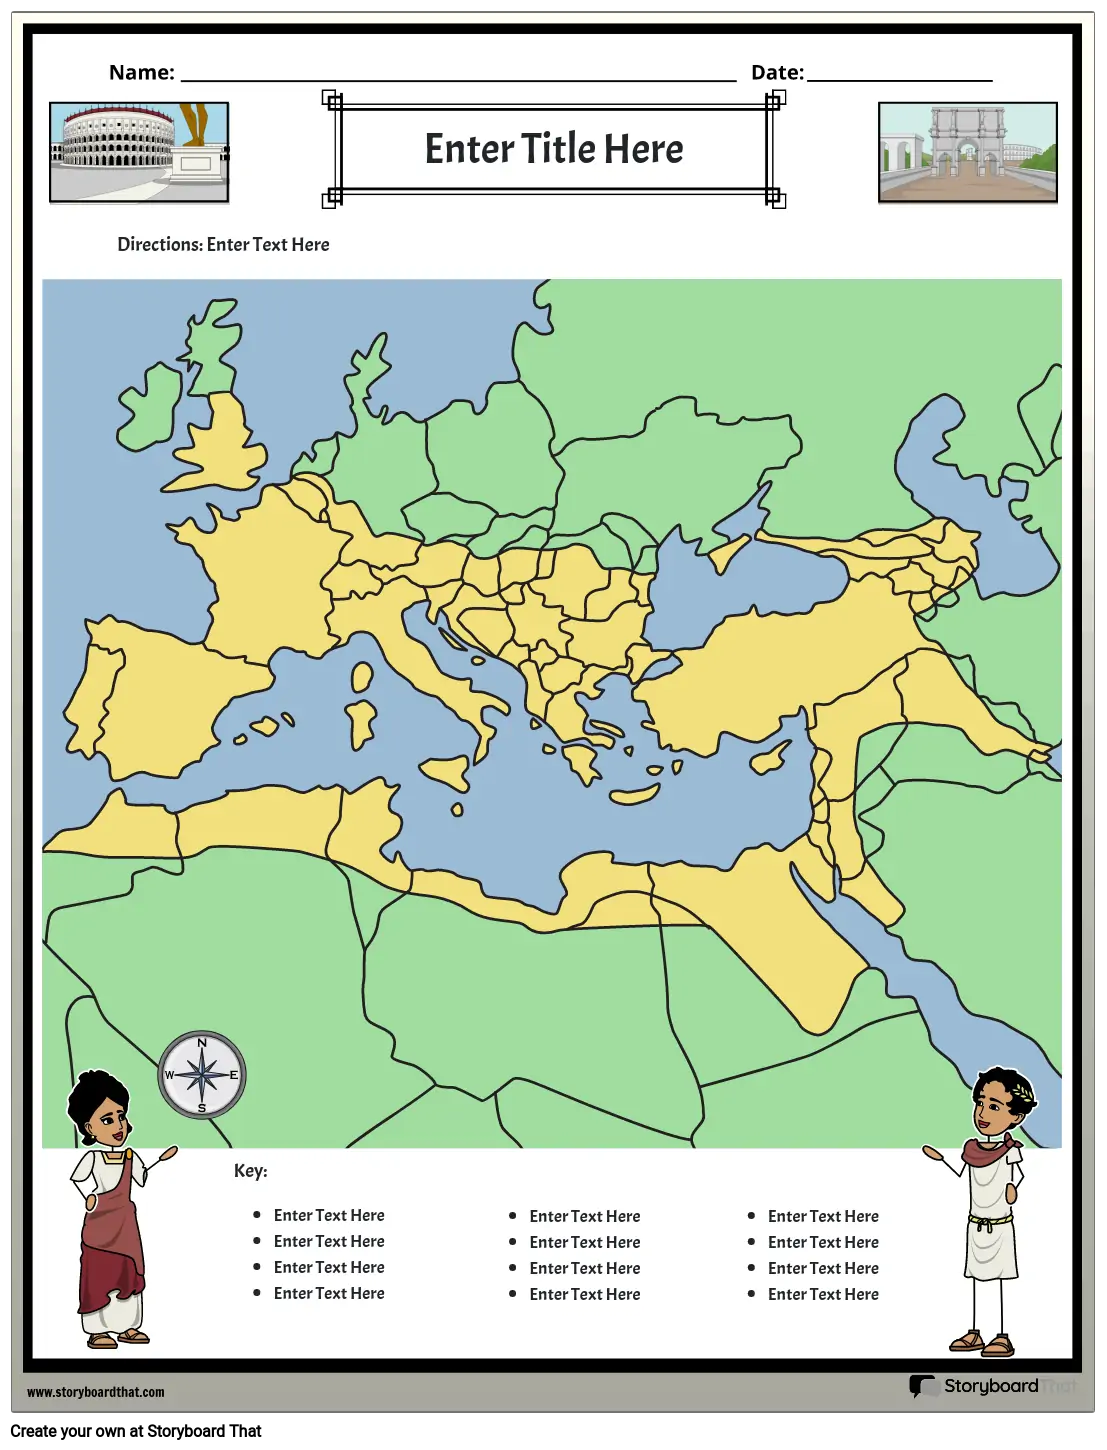 خريطة الإمبراطورية الرومانية